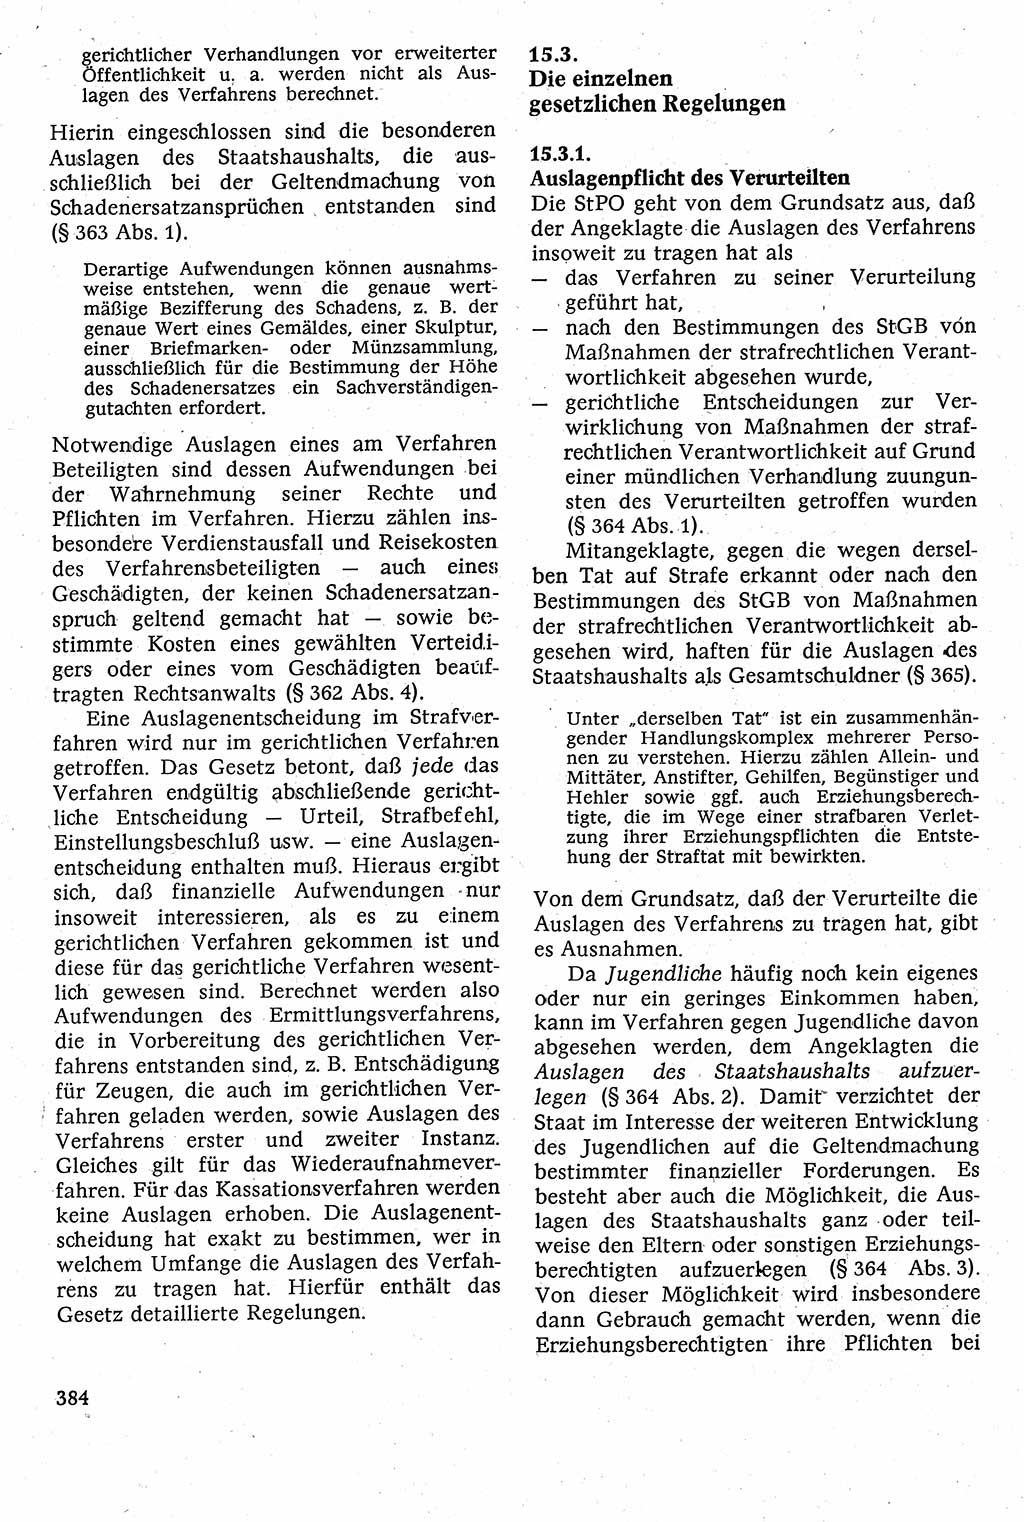 Strafverfahrensrecht [Deutsche Demokratische Republik (DDR)], Lehrbuch 1982, Seite 384 (Strafverf.-R. DDR Lb. 1982, S. 384)